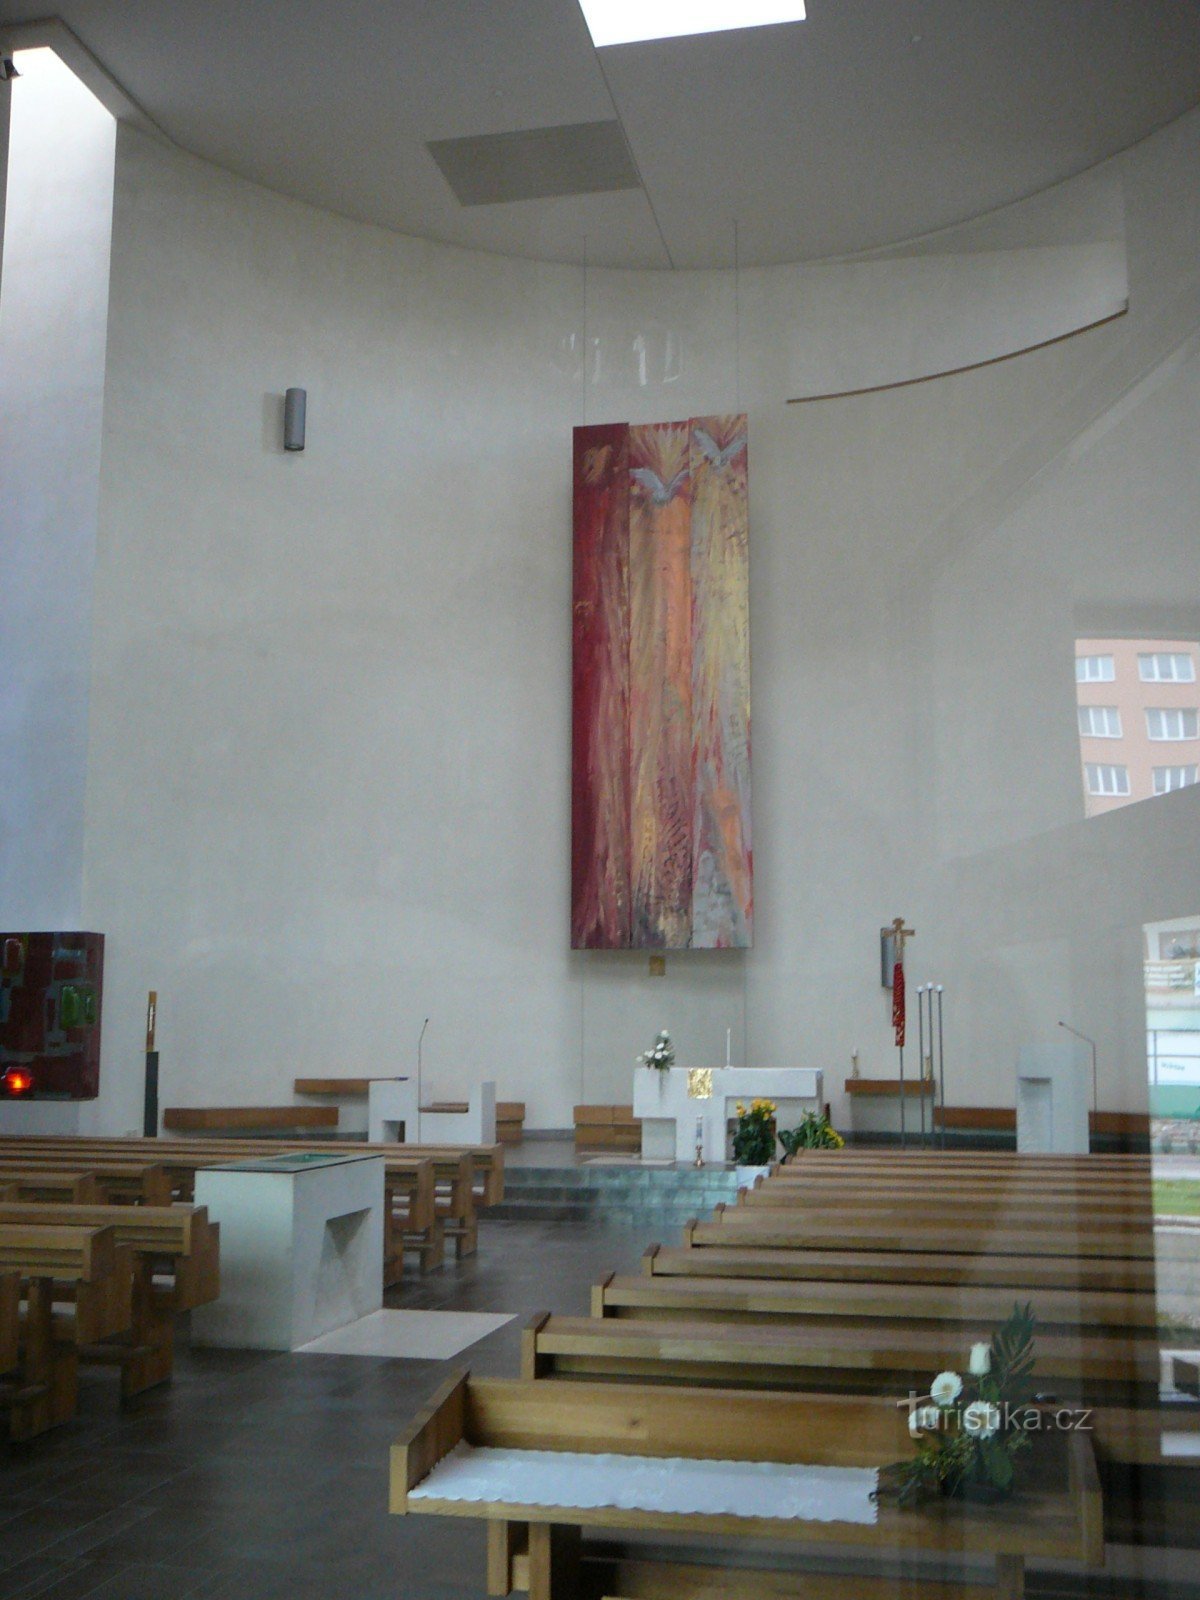 Interieur mit Triptychon und linkem Teil